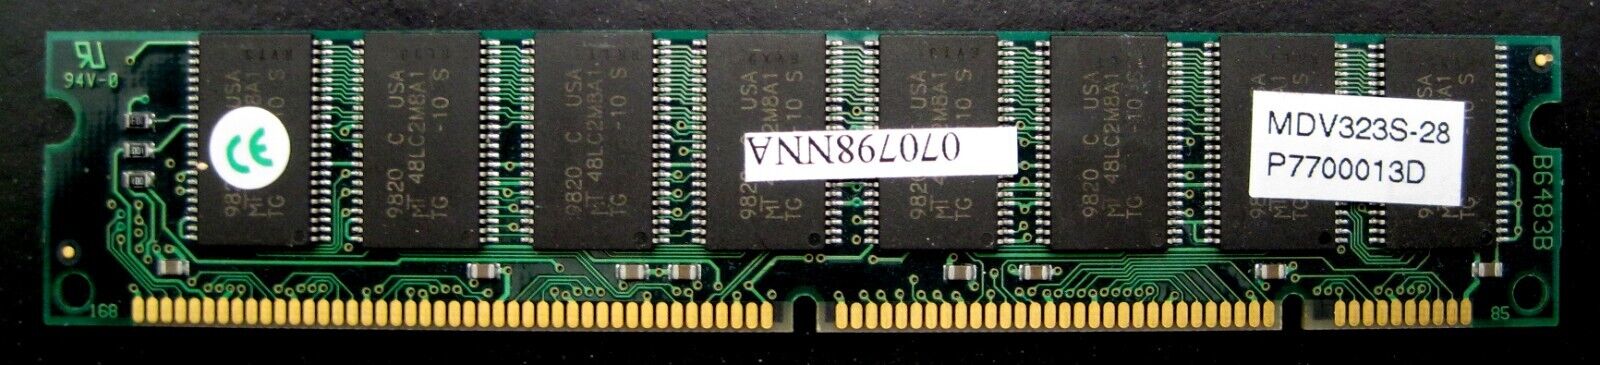 MDV323S-28 HP 32MB PC100 100MHz non-ECC Unbuffered CL2 168-Pin DIMM Memory